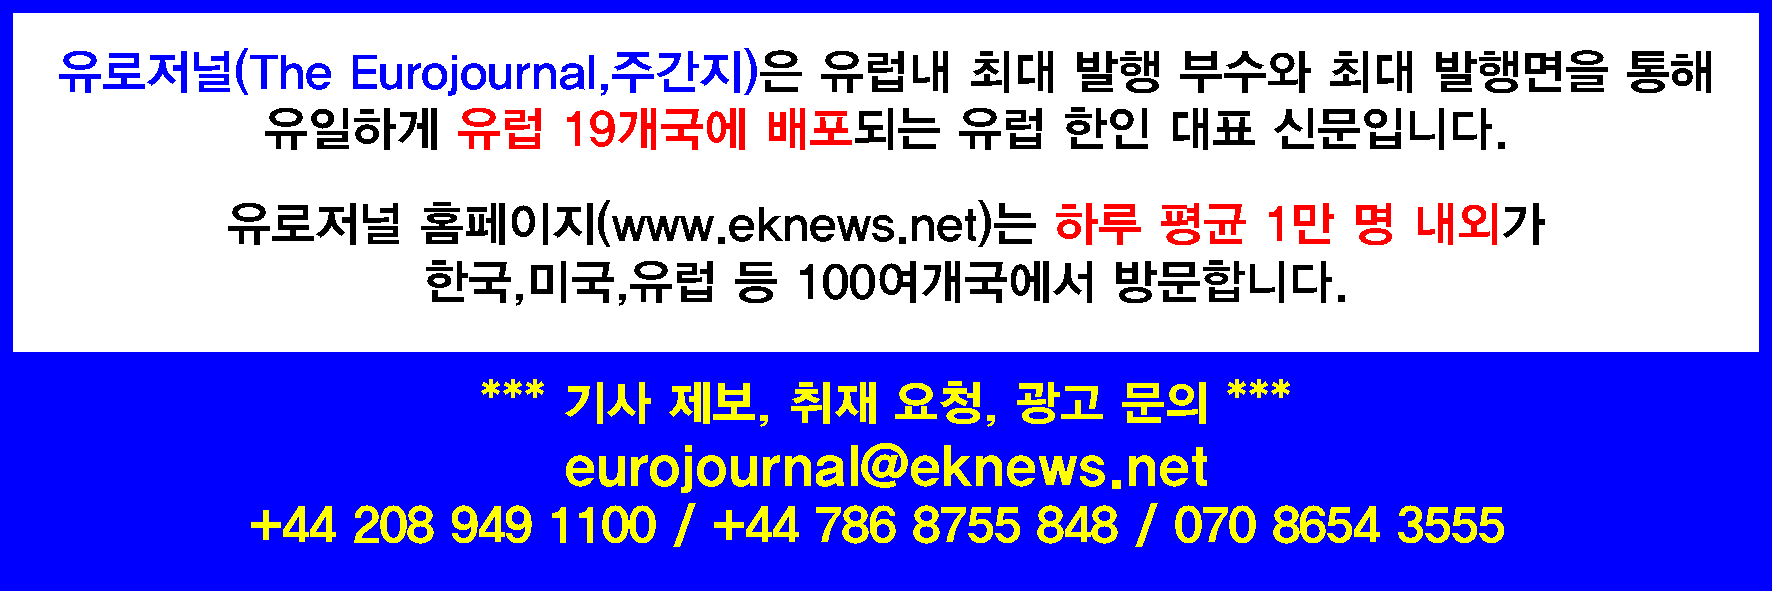 ek_homepage_logo (1).jpg